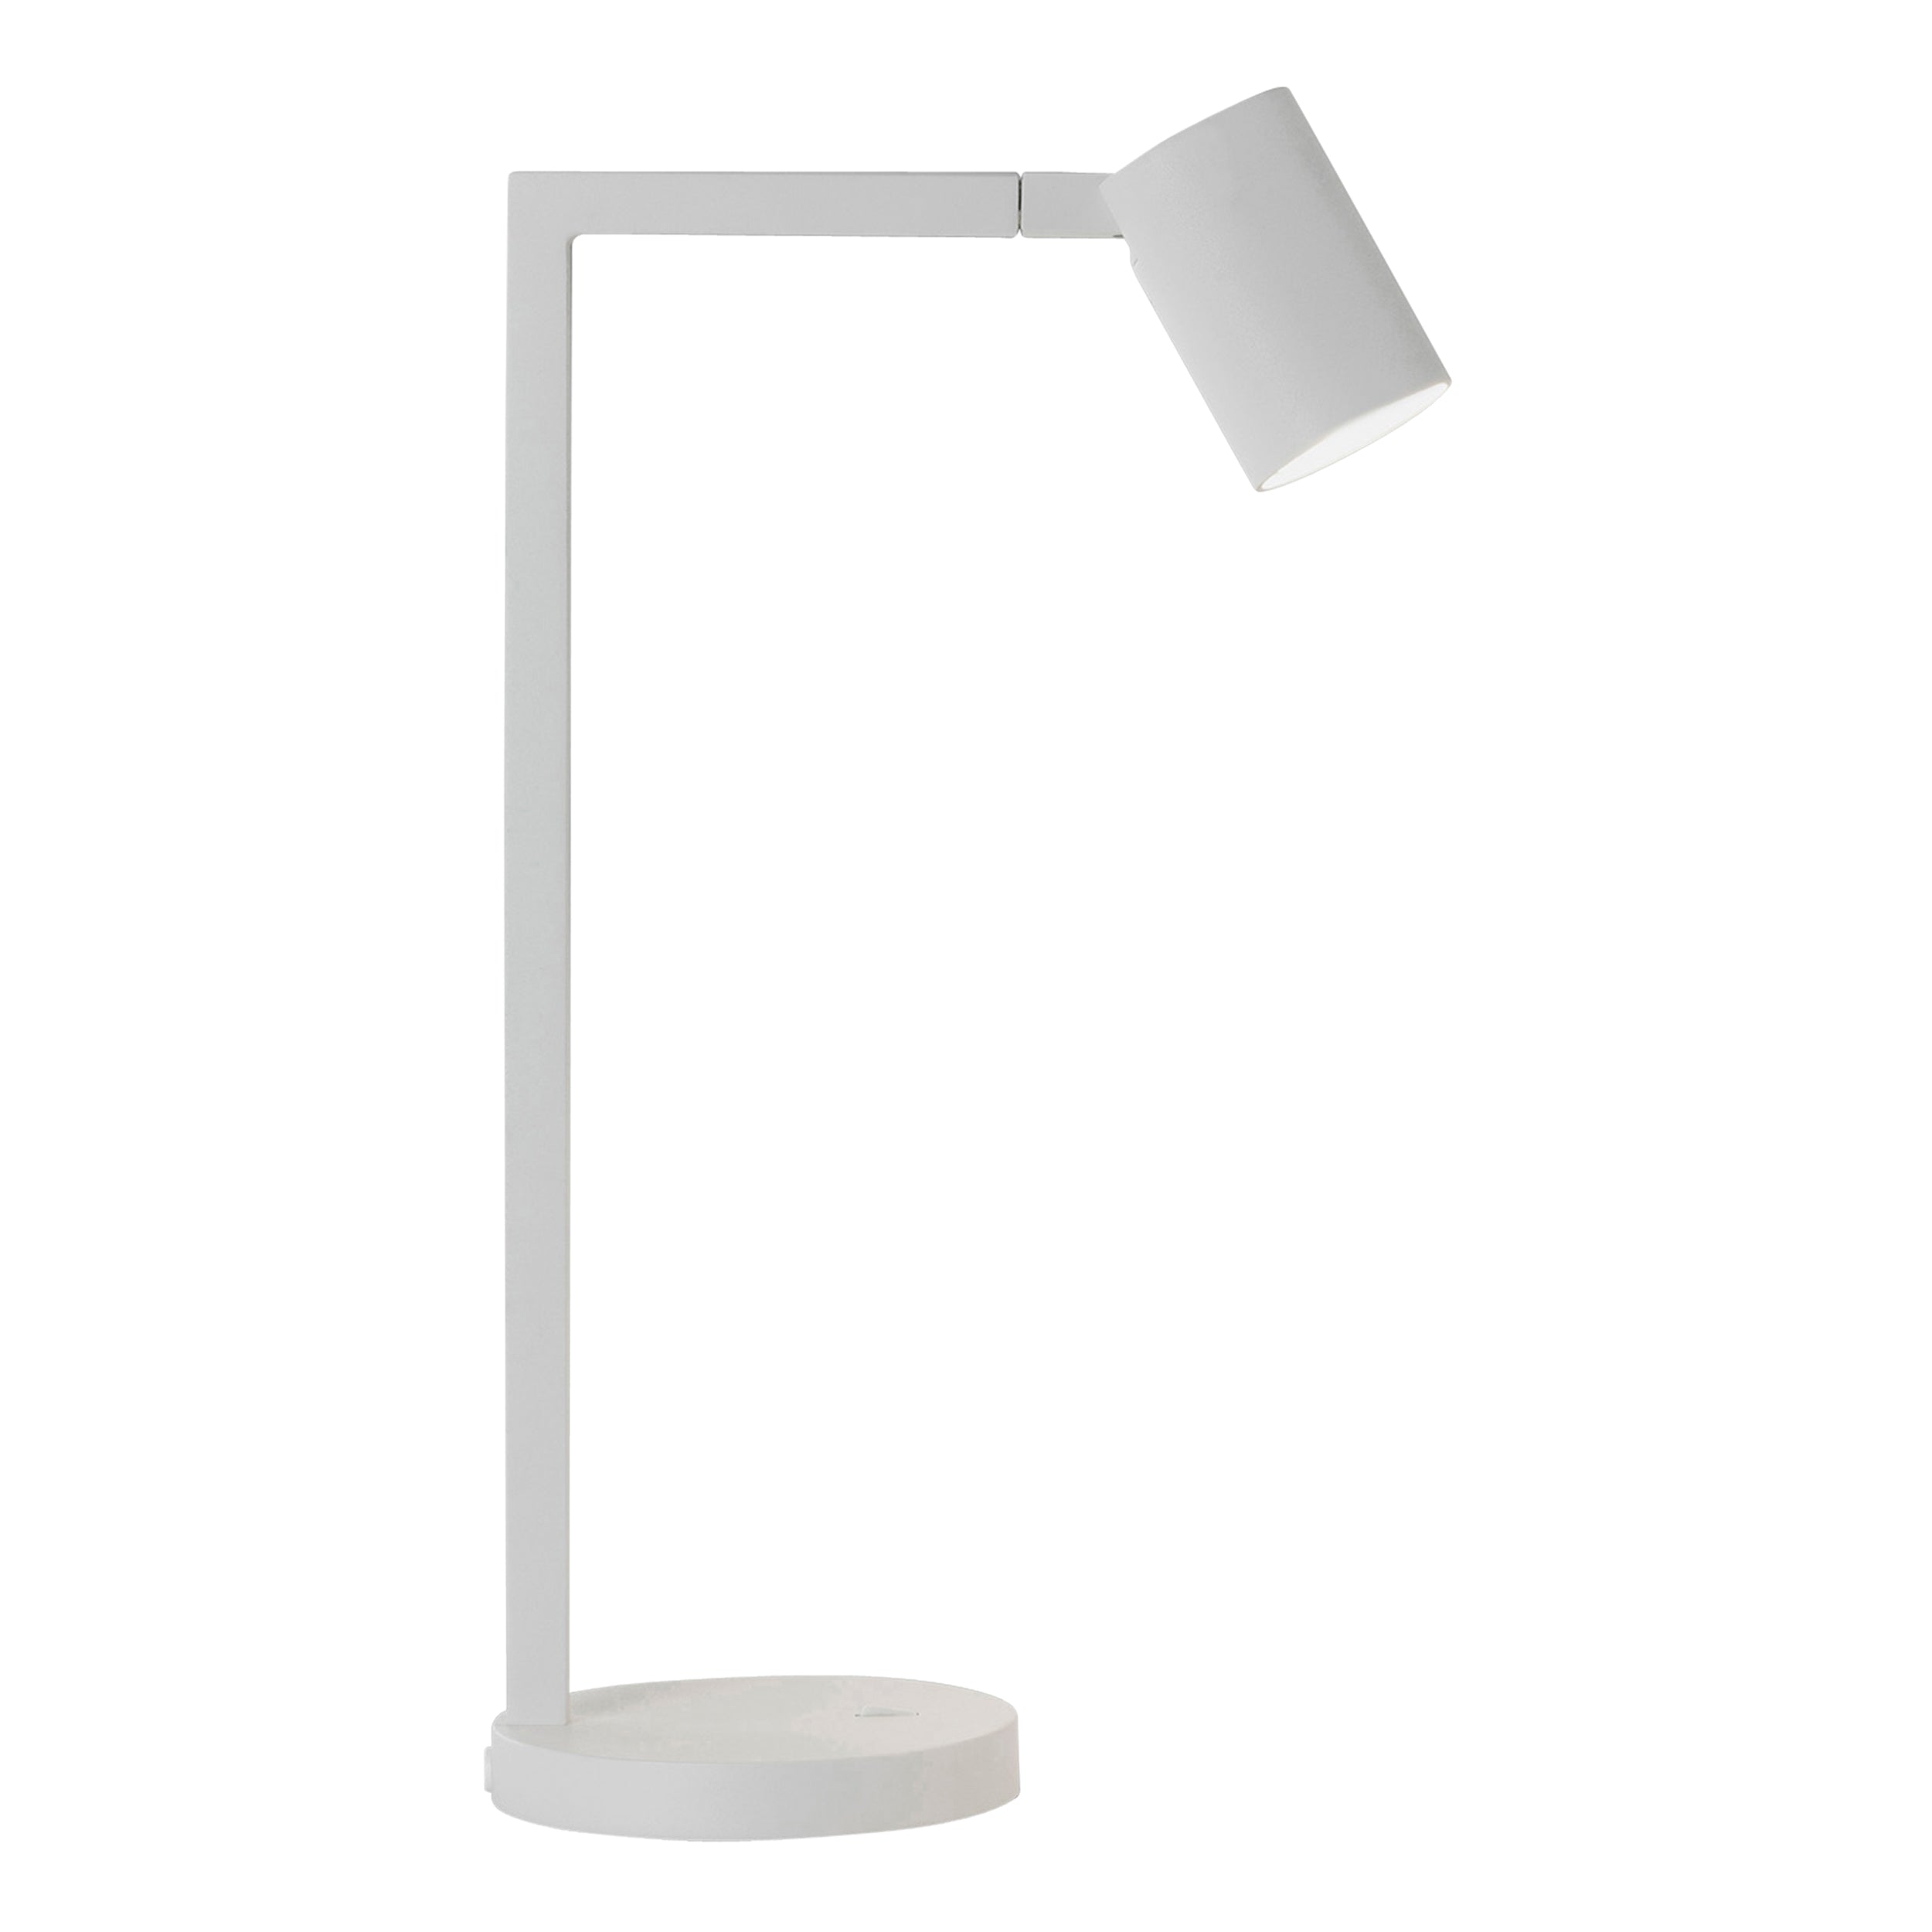 Hvid bordlampe med justerbar hoved. Lampen har et enkelt design med firkantede linjer/vinkler.